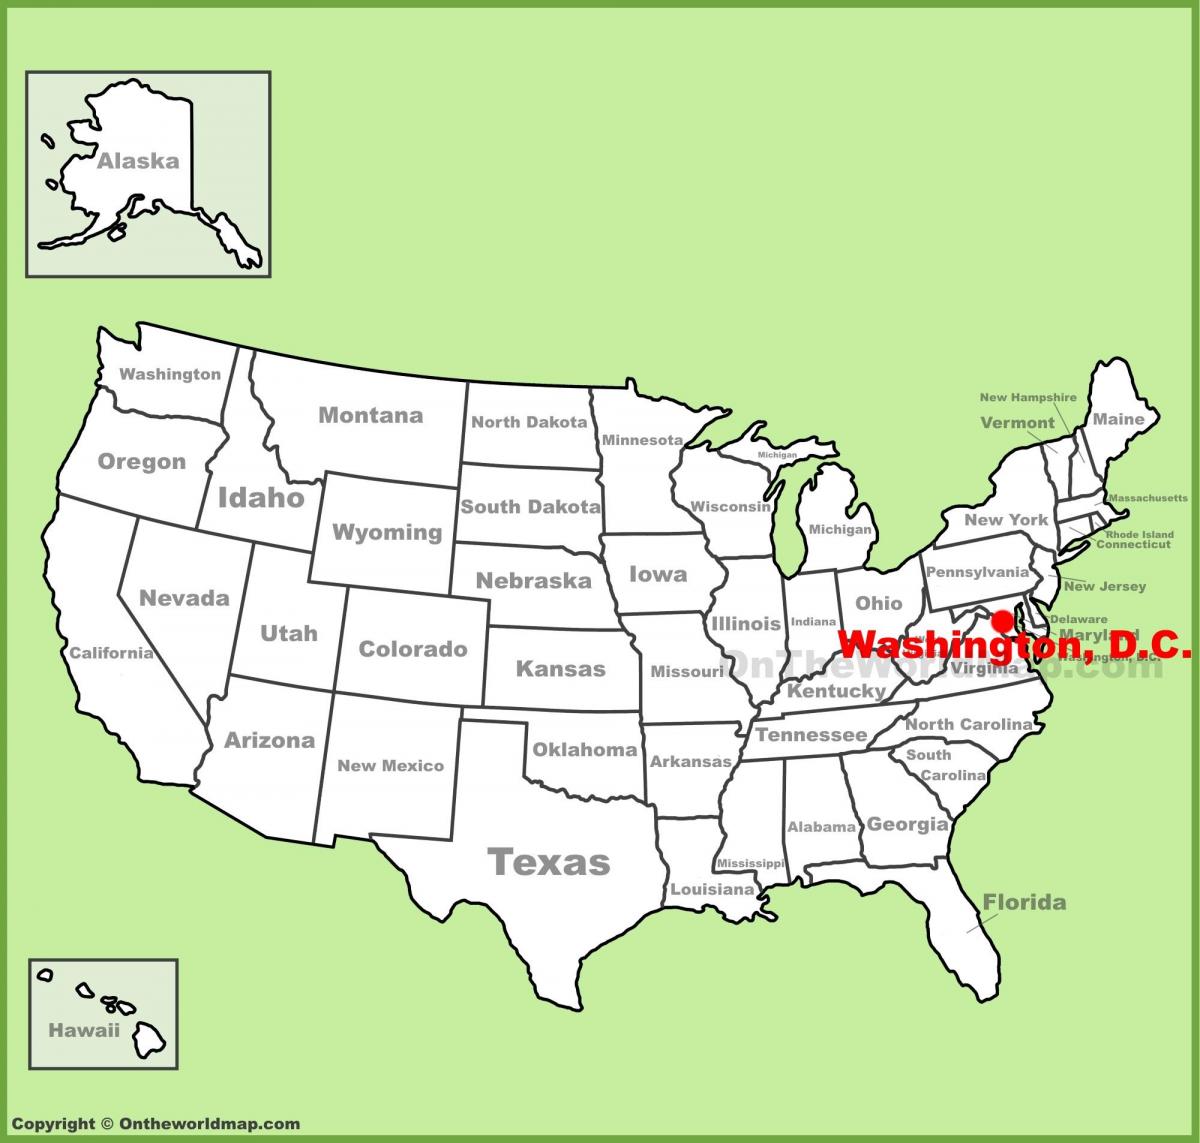 ουάσιγκτον dc στο χάρτη της αμερικής